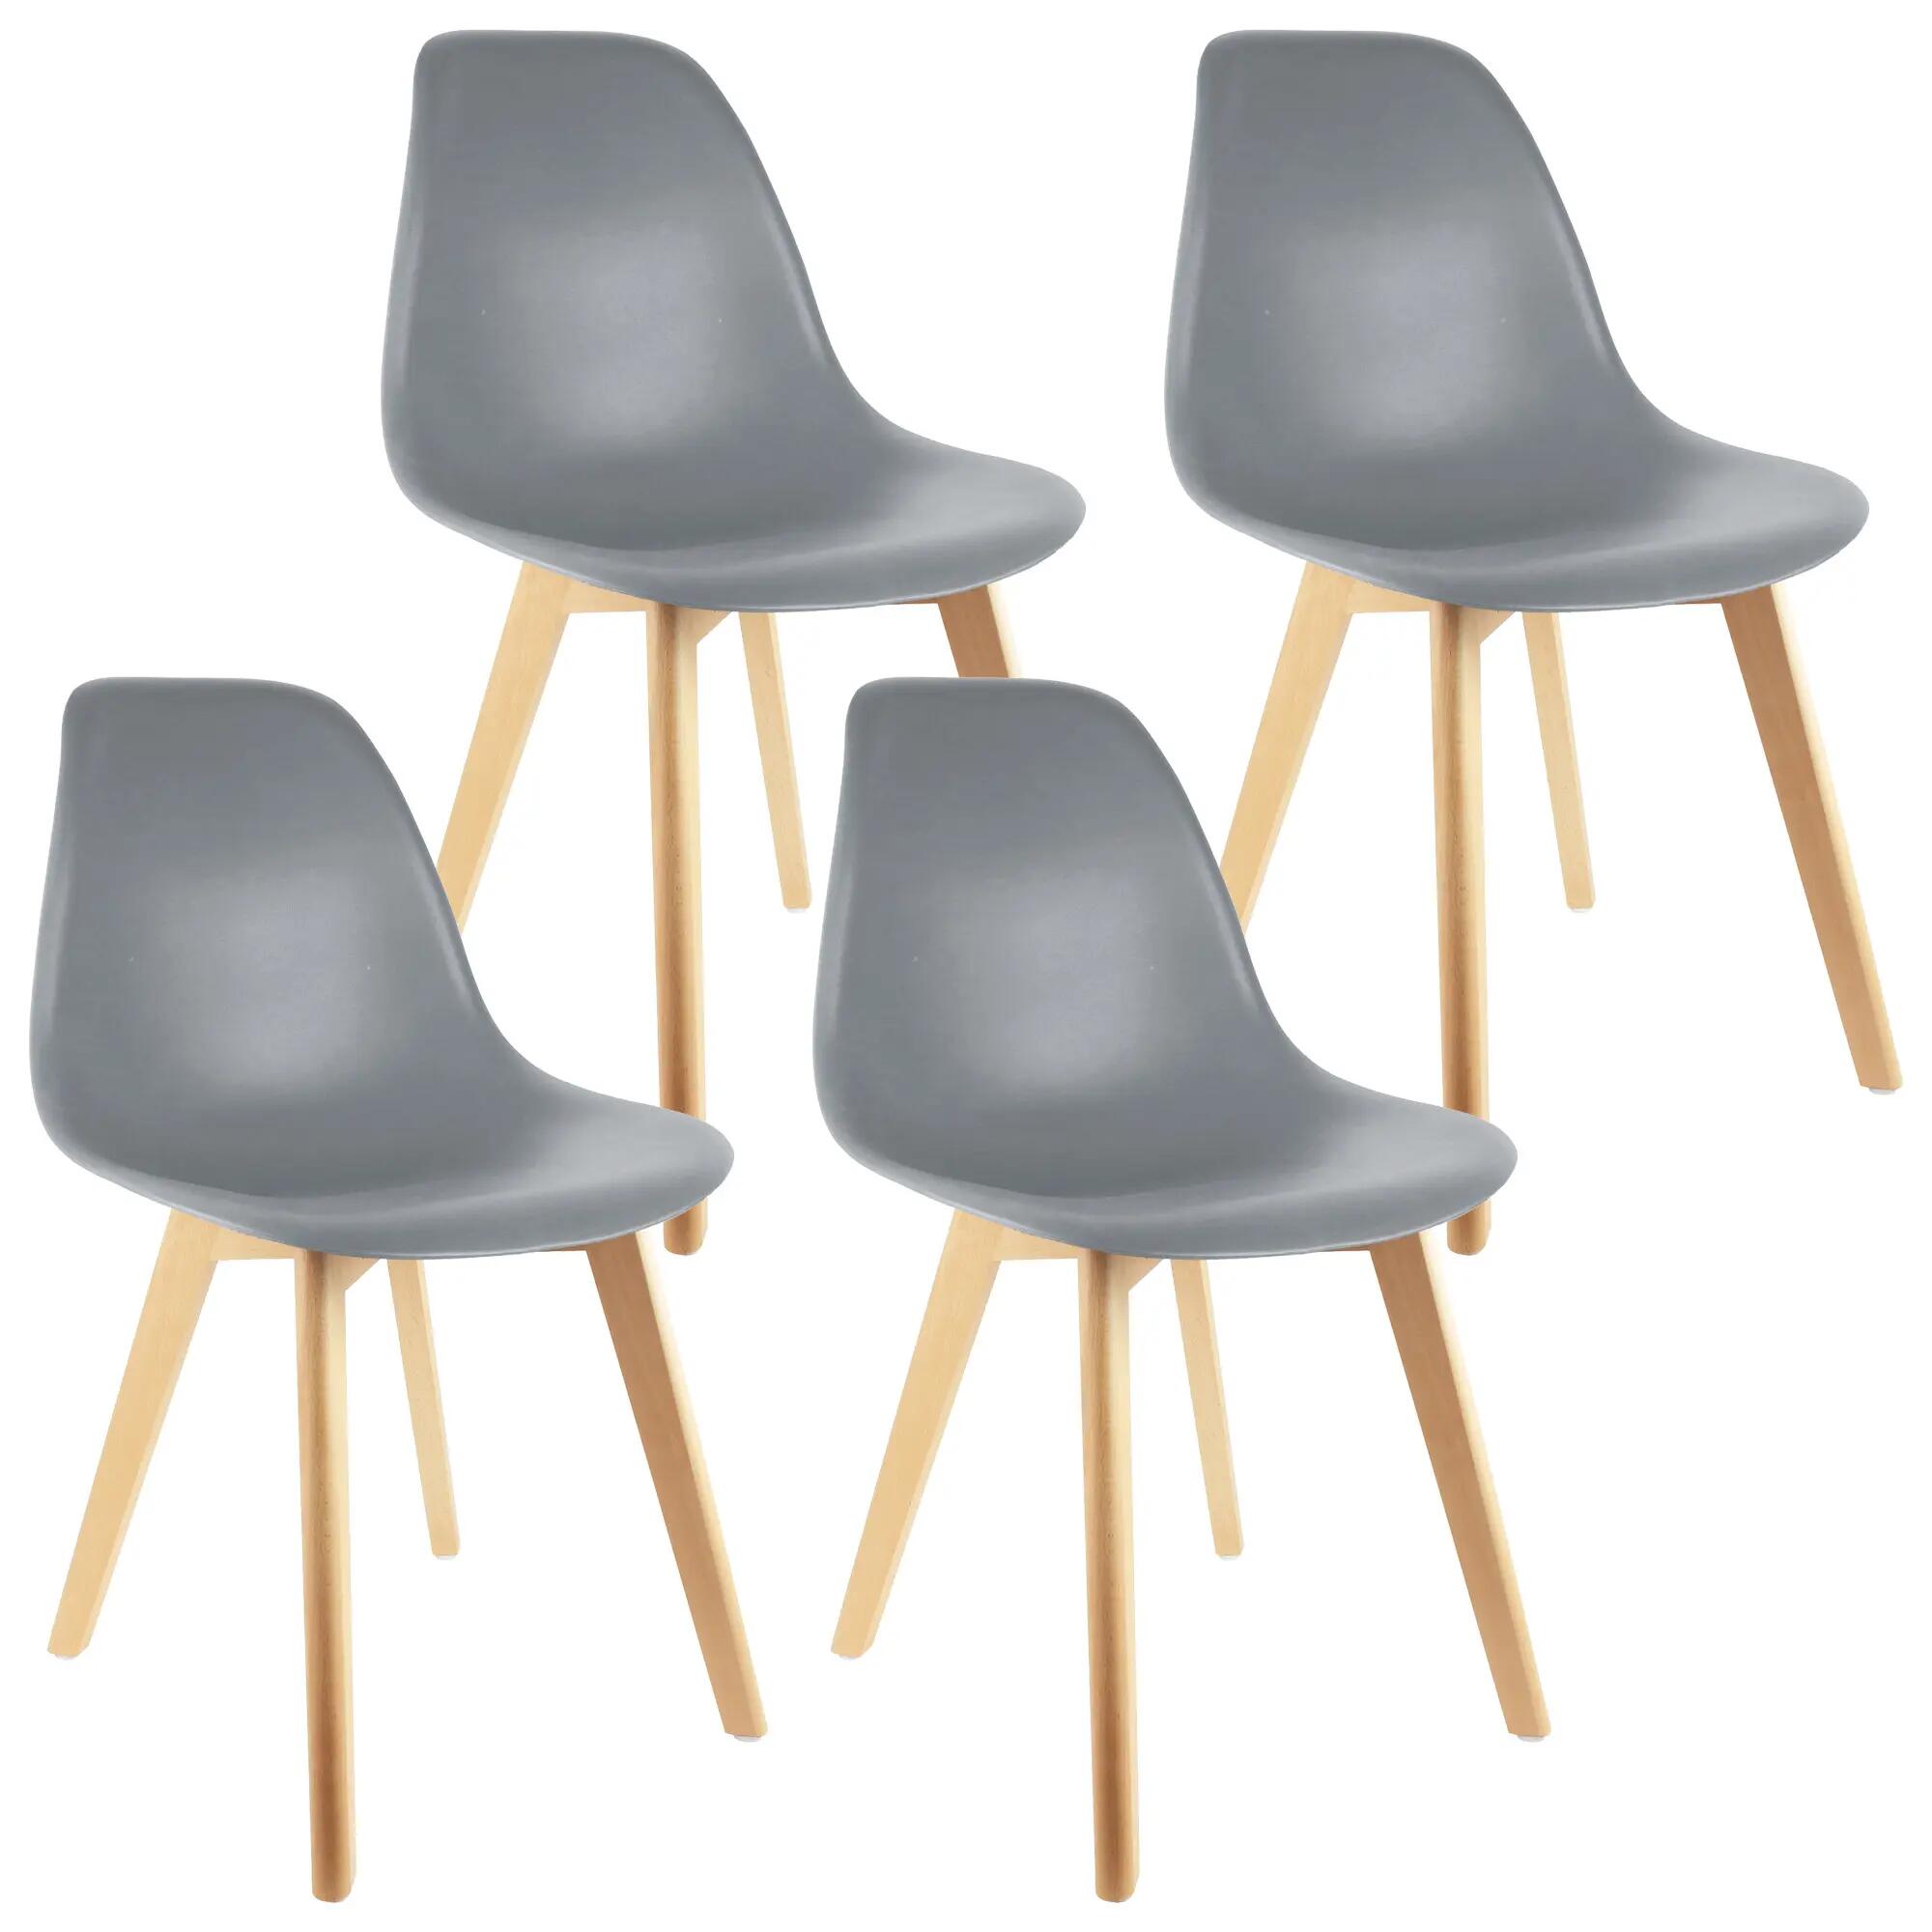 Set de 4 sillas stockholm de madera en color gris plata cmp 83x46,3x50cm